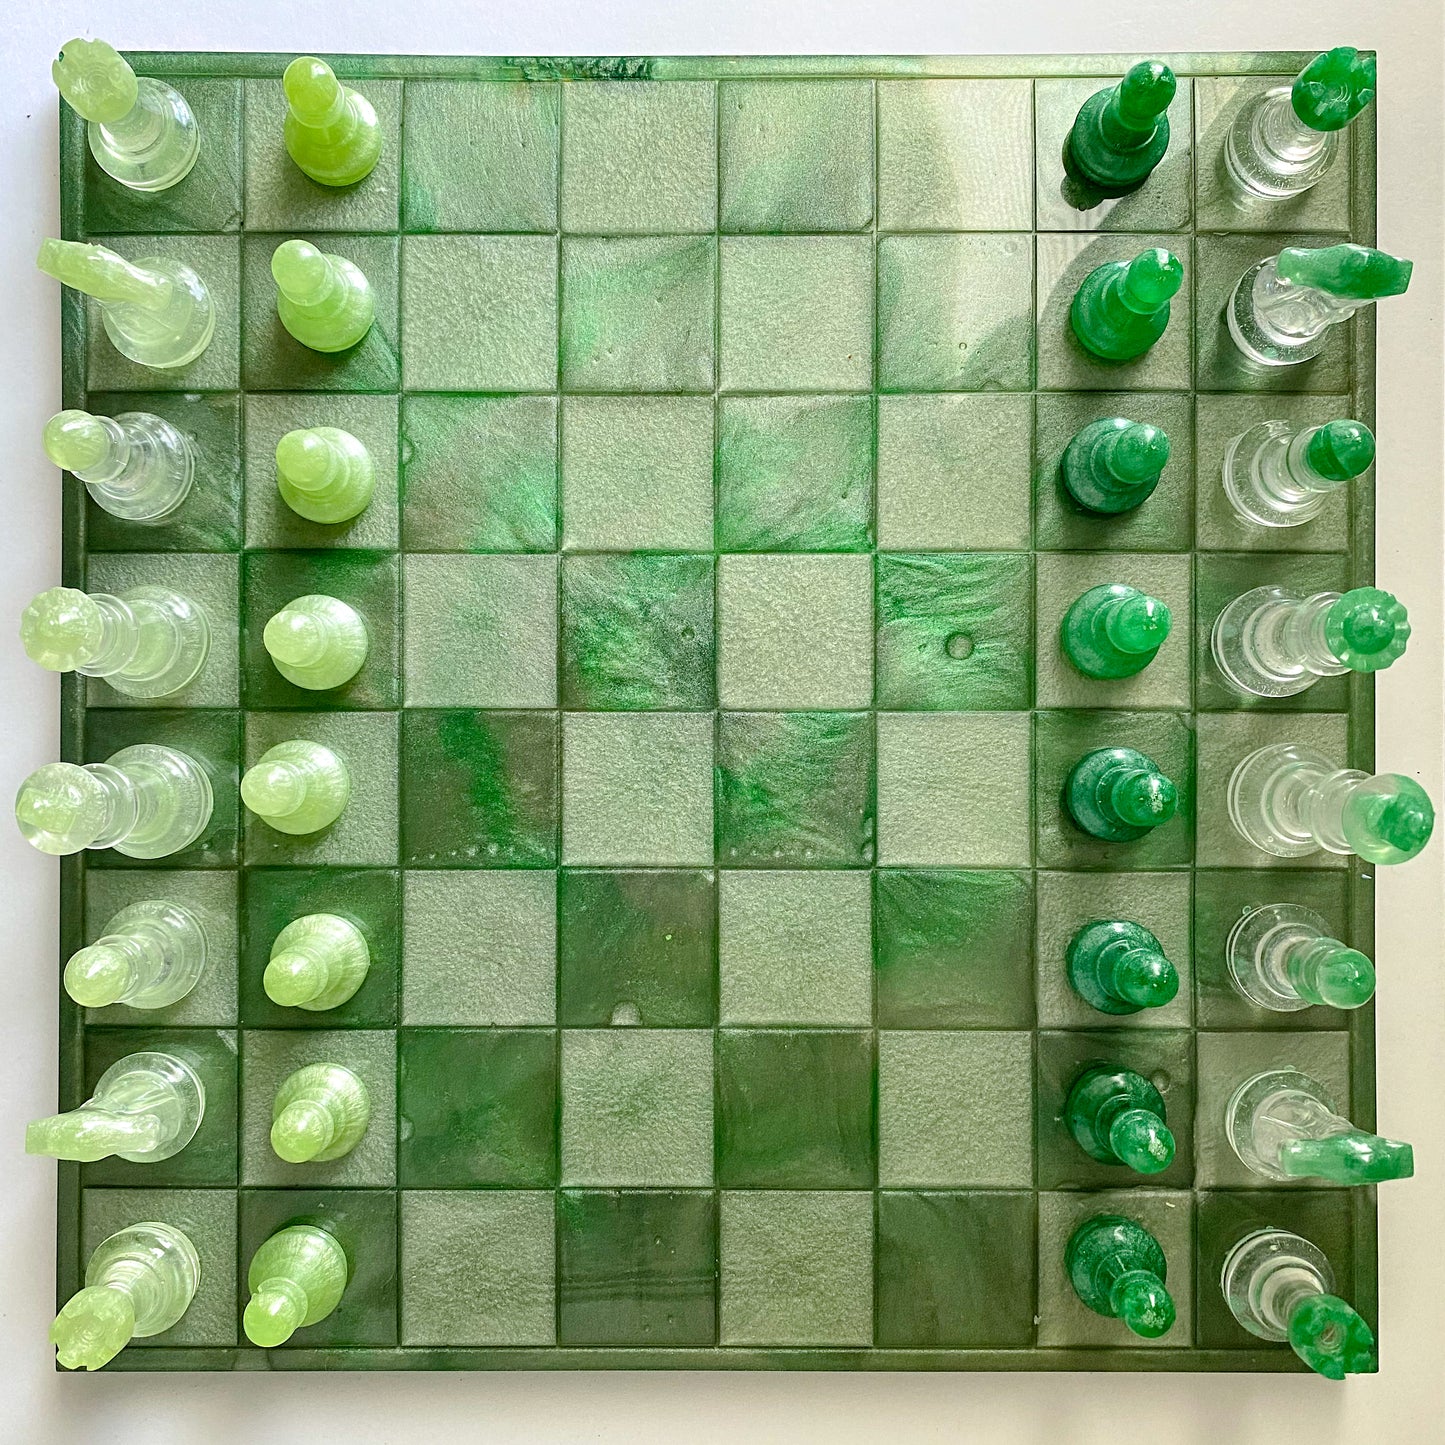 Handmade frog inspired resin chess set